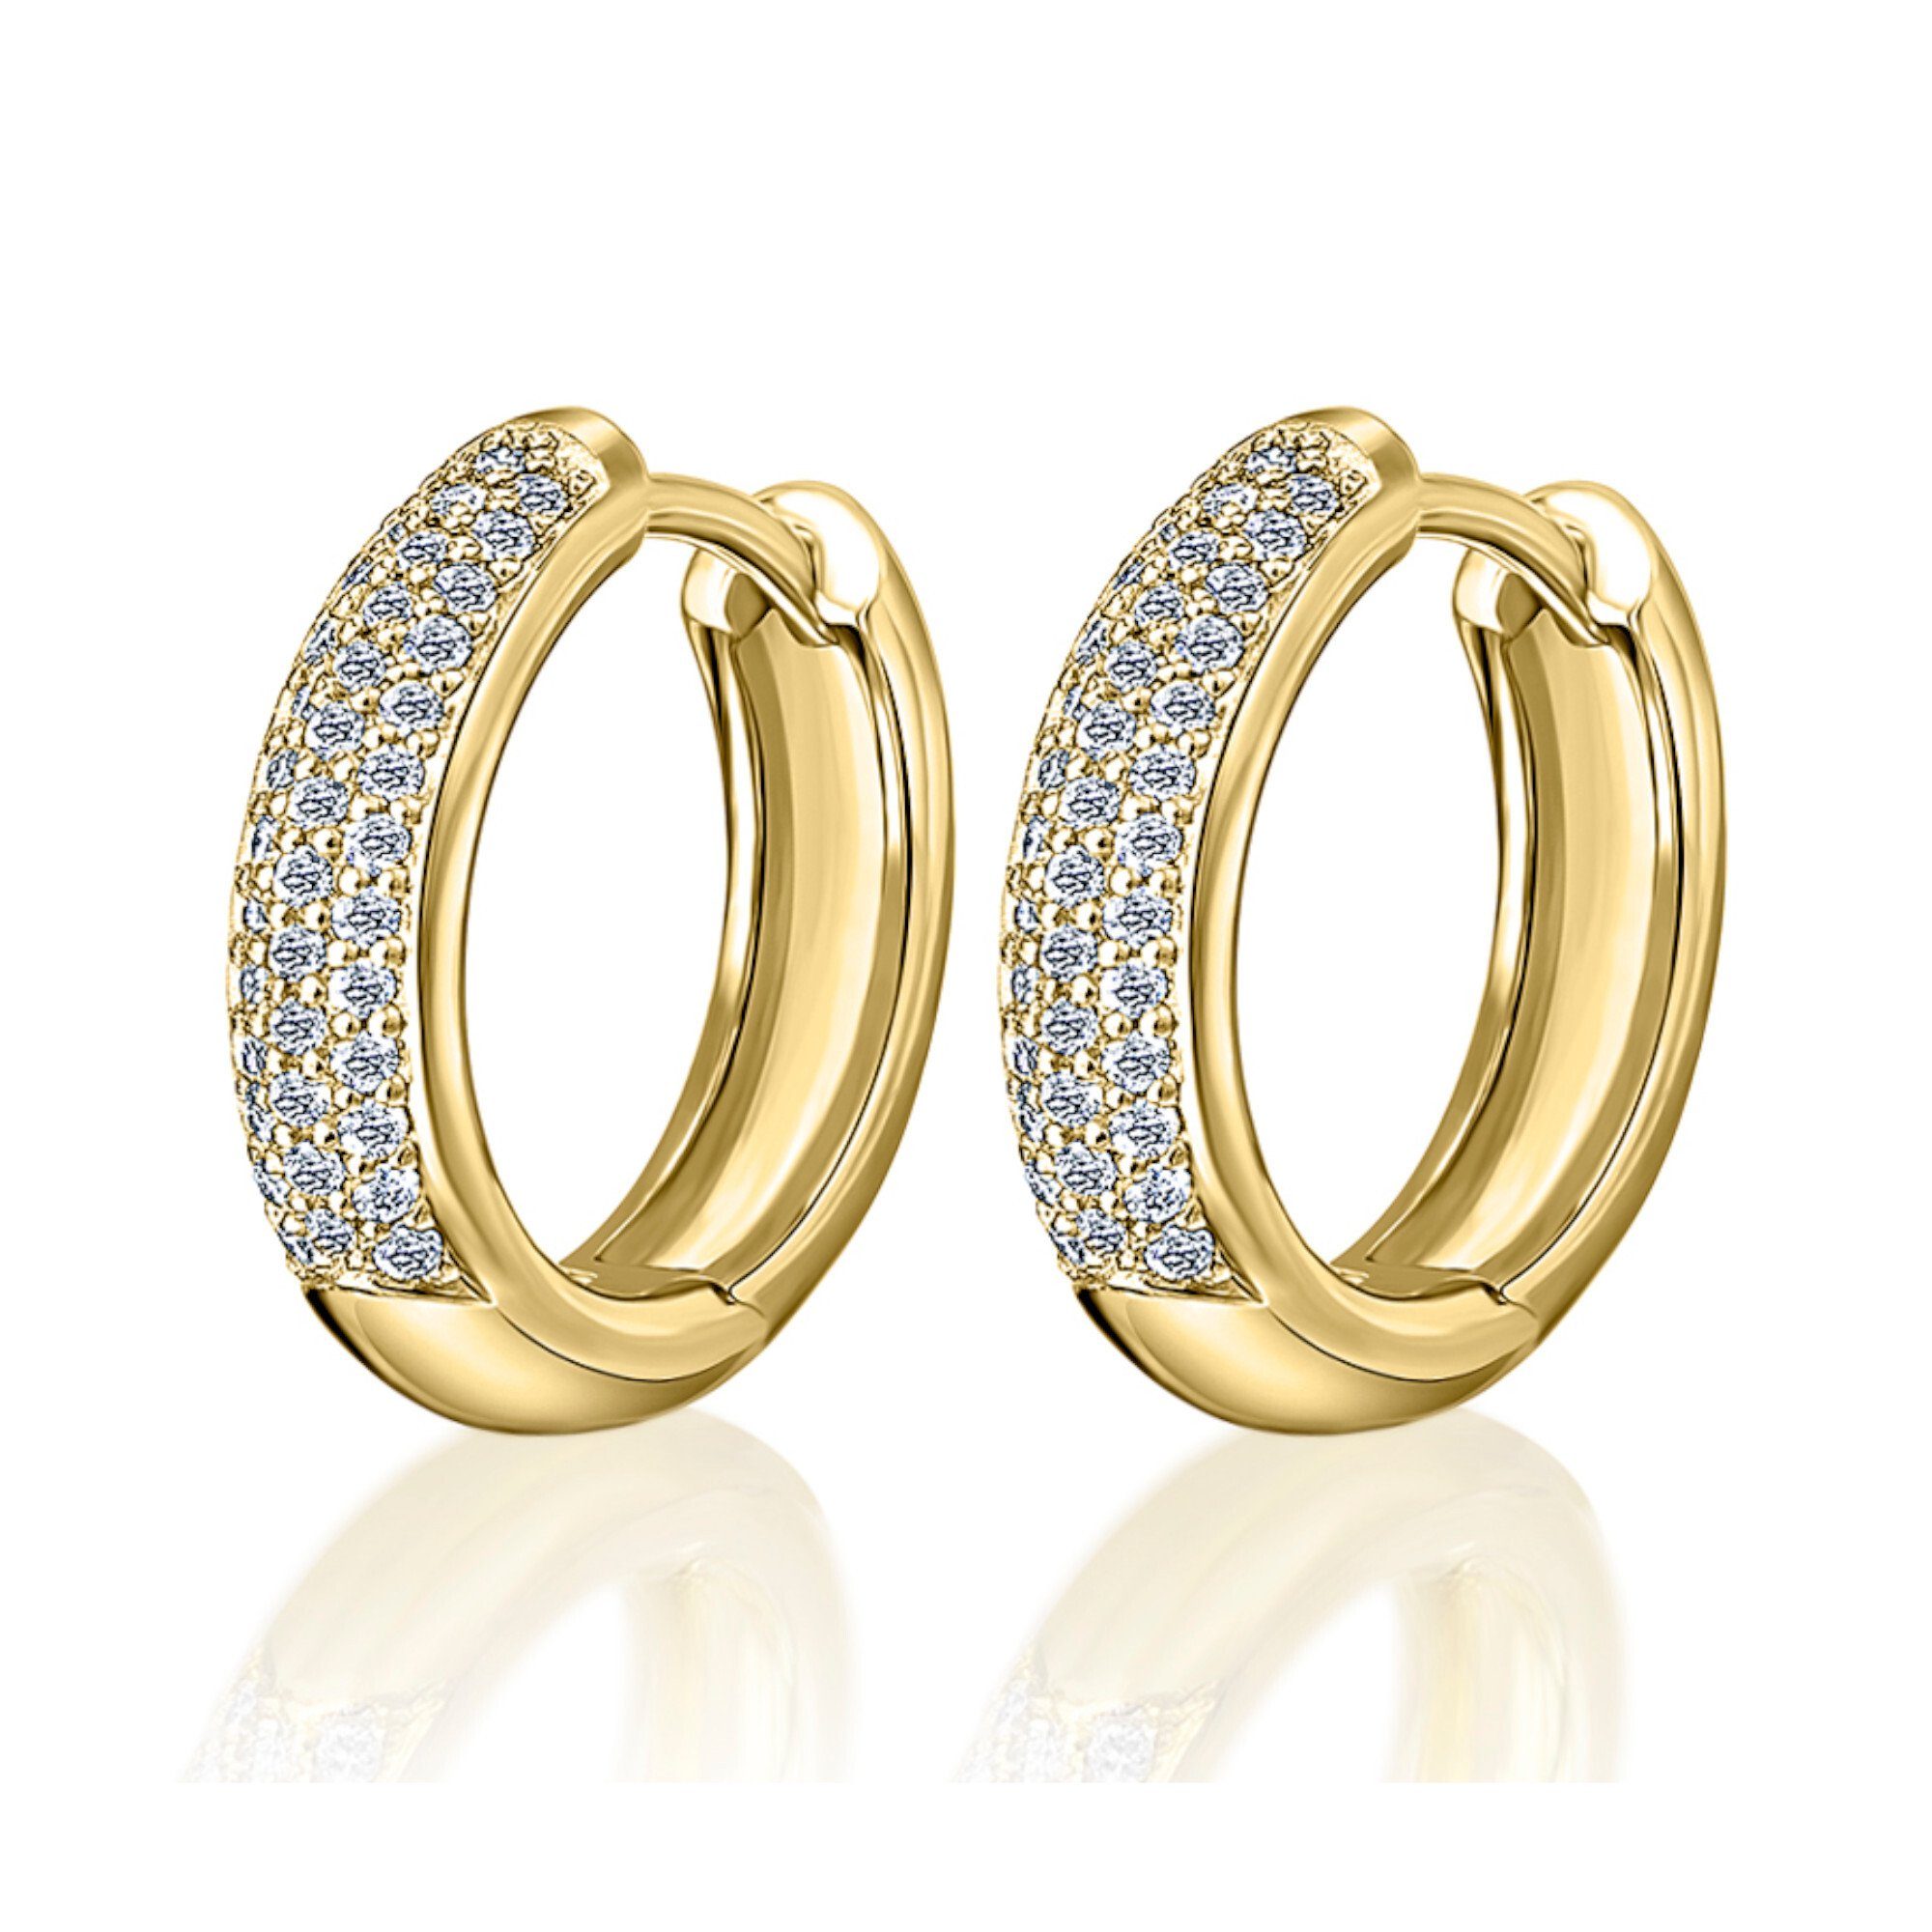 ONE ELEMENT Paar Creolen »0,25 ct Diamant Brillant Ohrringe / Creolen aus  585 Gelbgold« online kaufen | OTTO